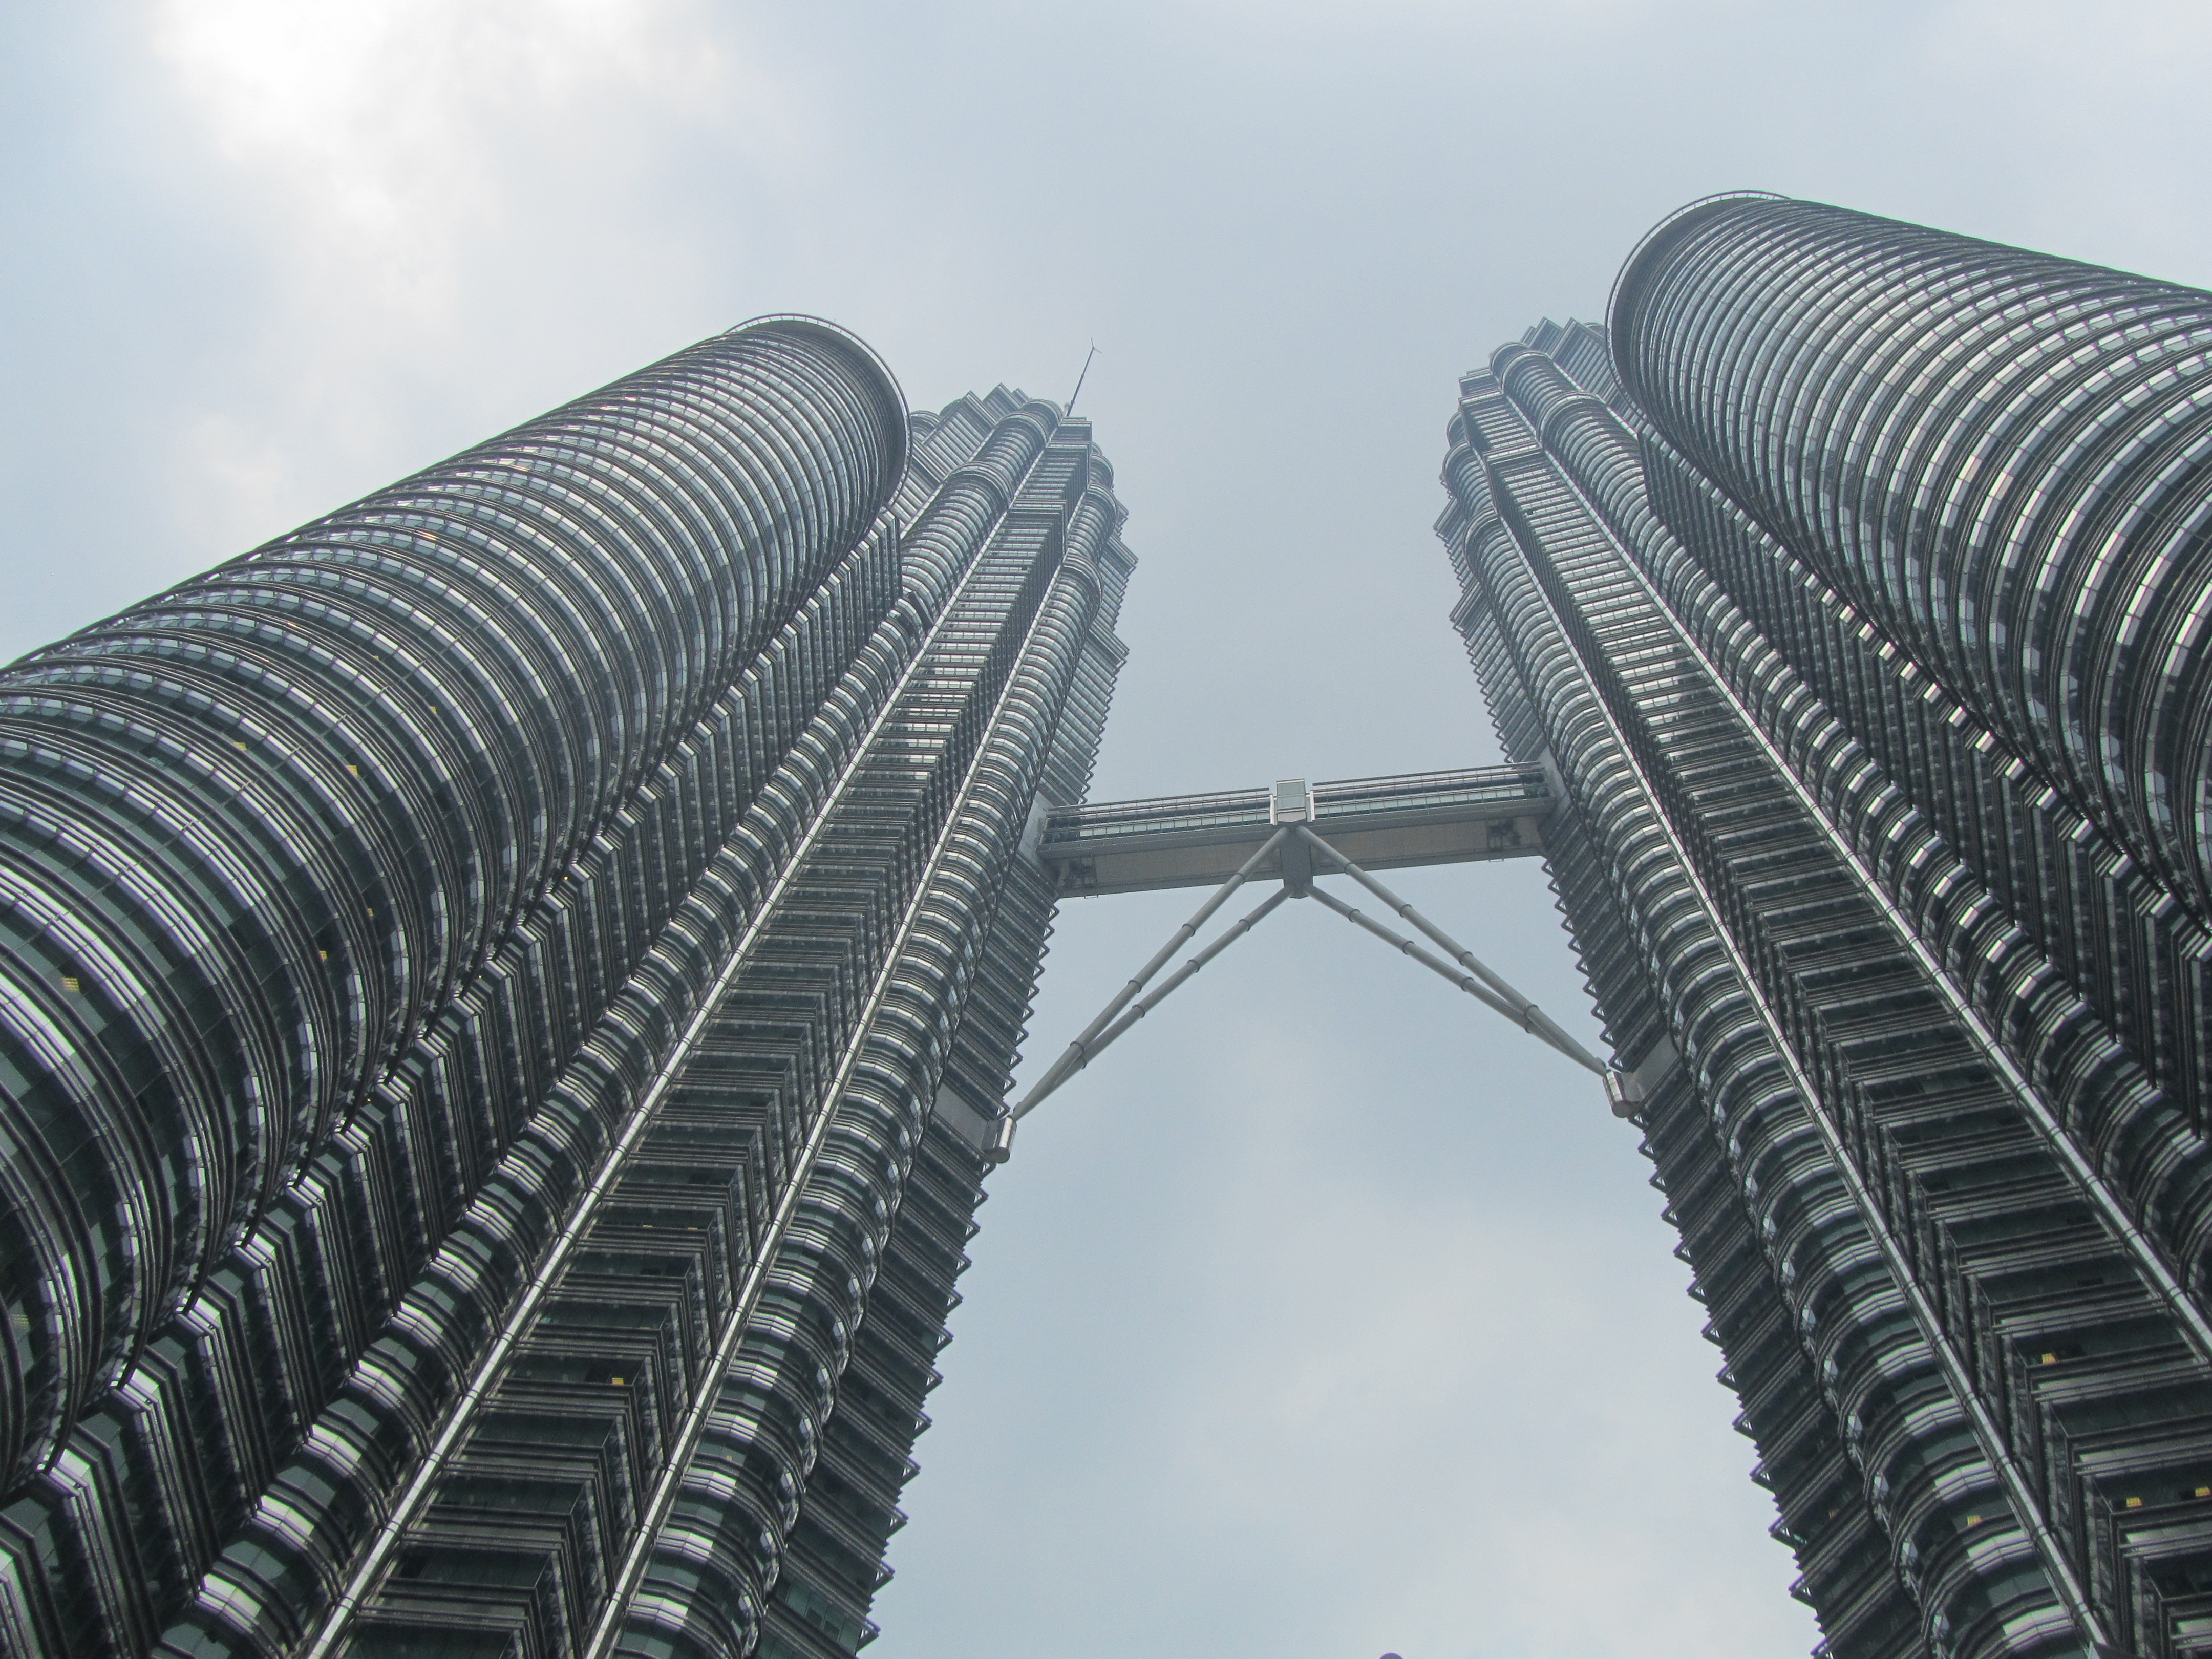 Dewan Filharmonik Petronas, Kuala Lumpur